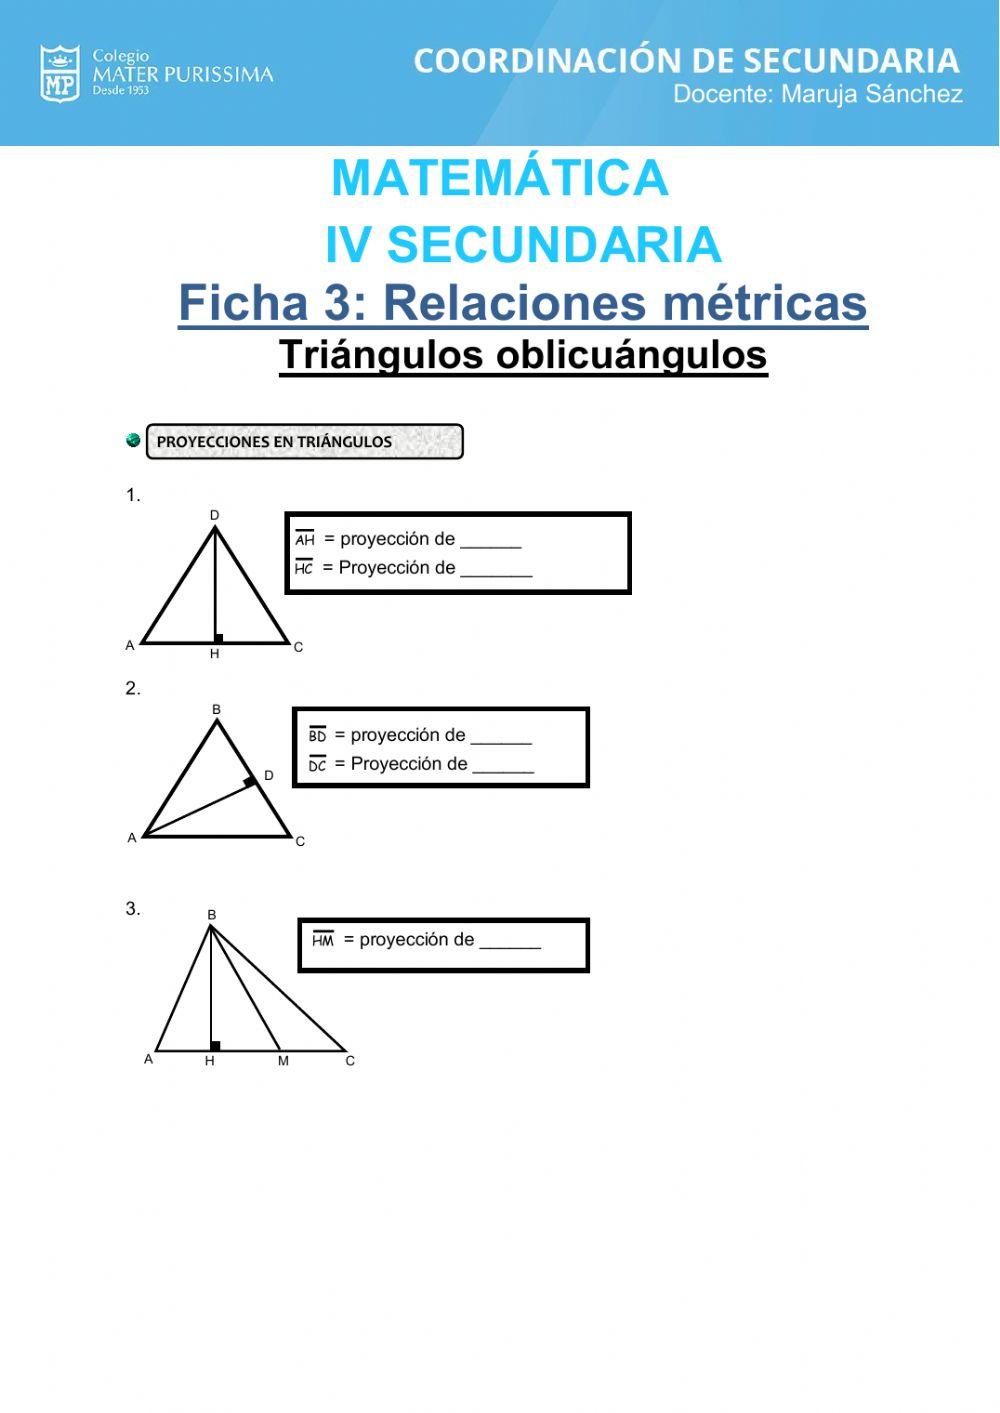 Relaciones metricas en el triangulo oblicuangulo